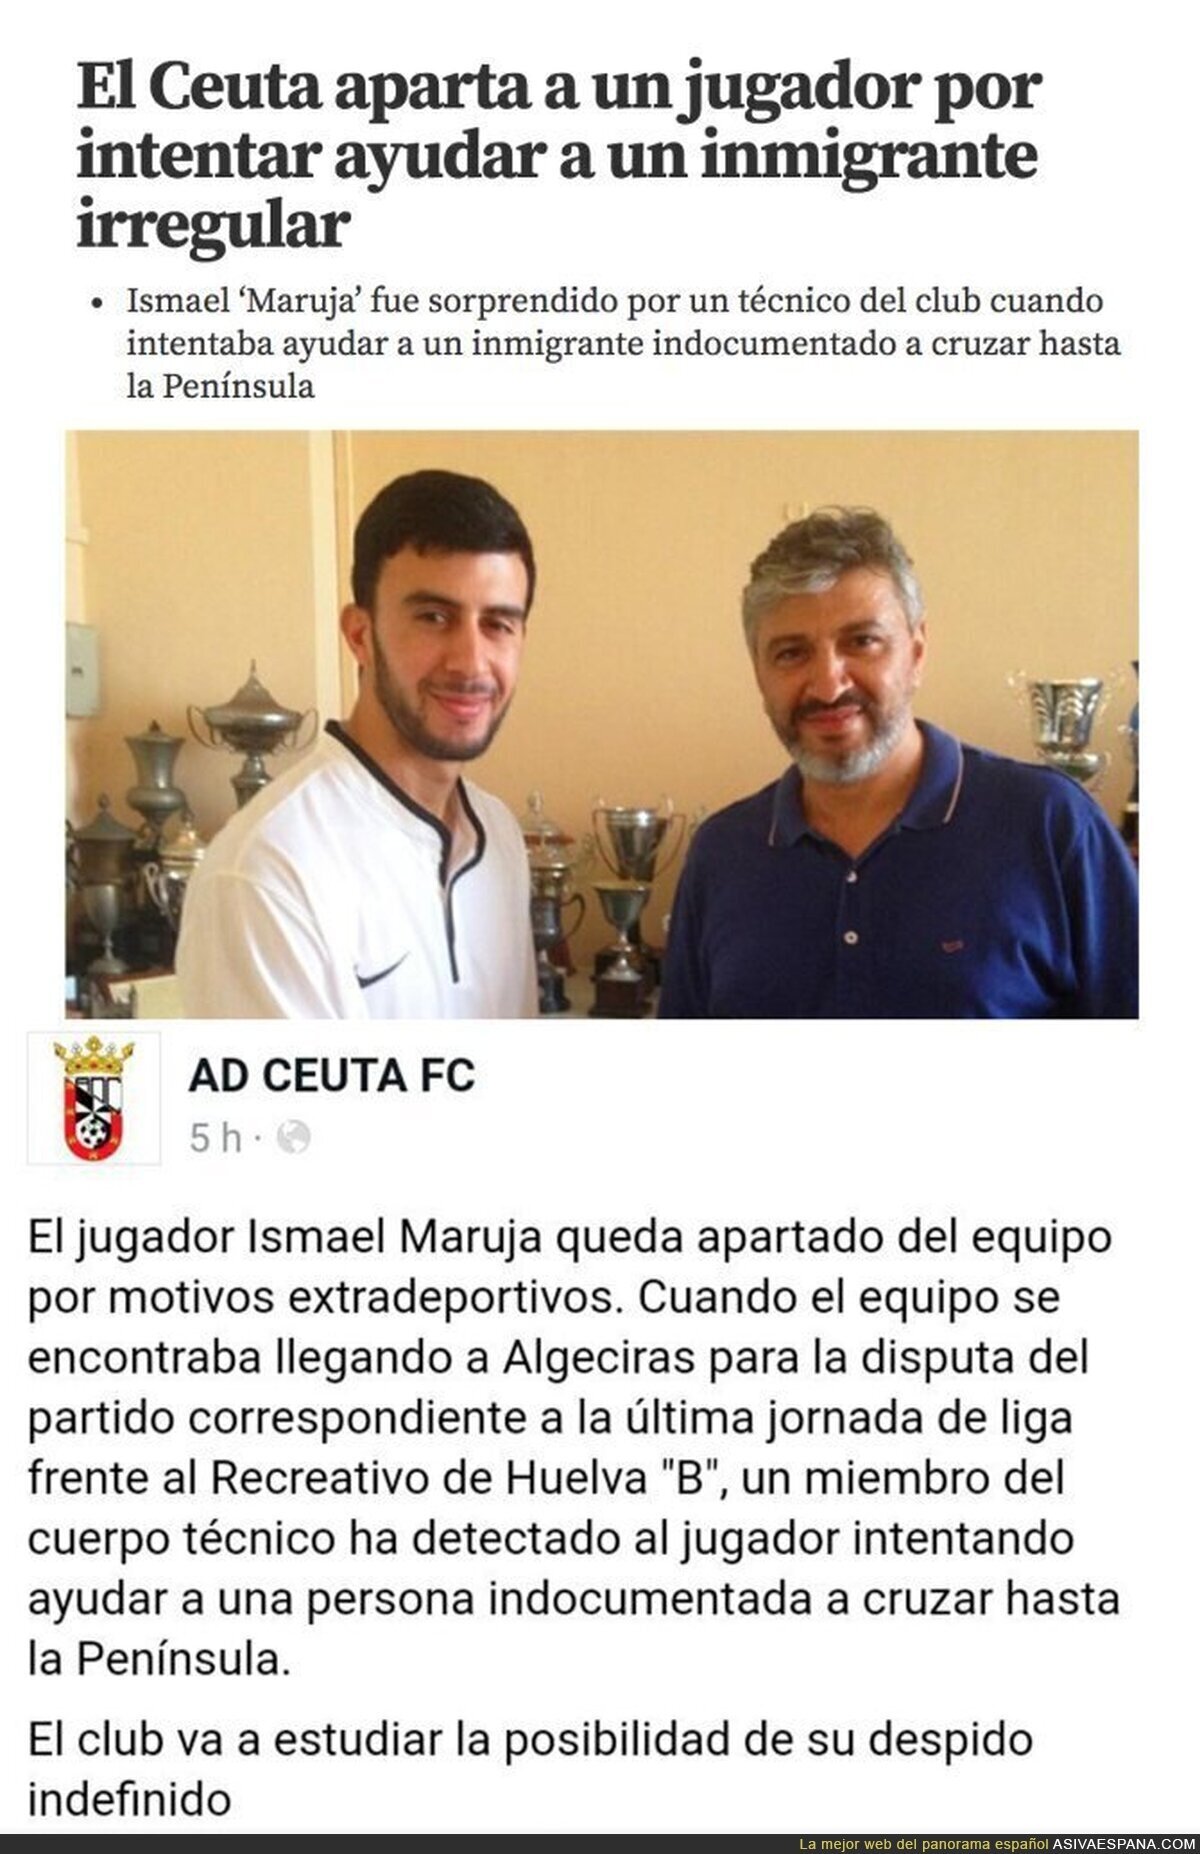 Apartan a este jugador del Ceuta tras ser pillado ayudandoa cruzar a la península a un inmigrante